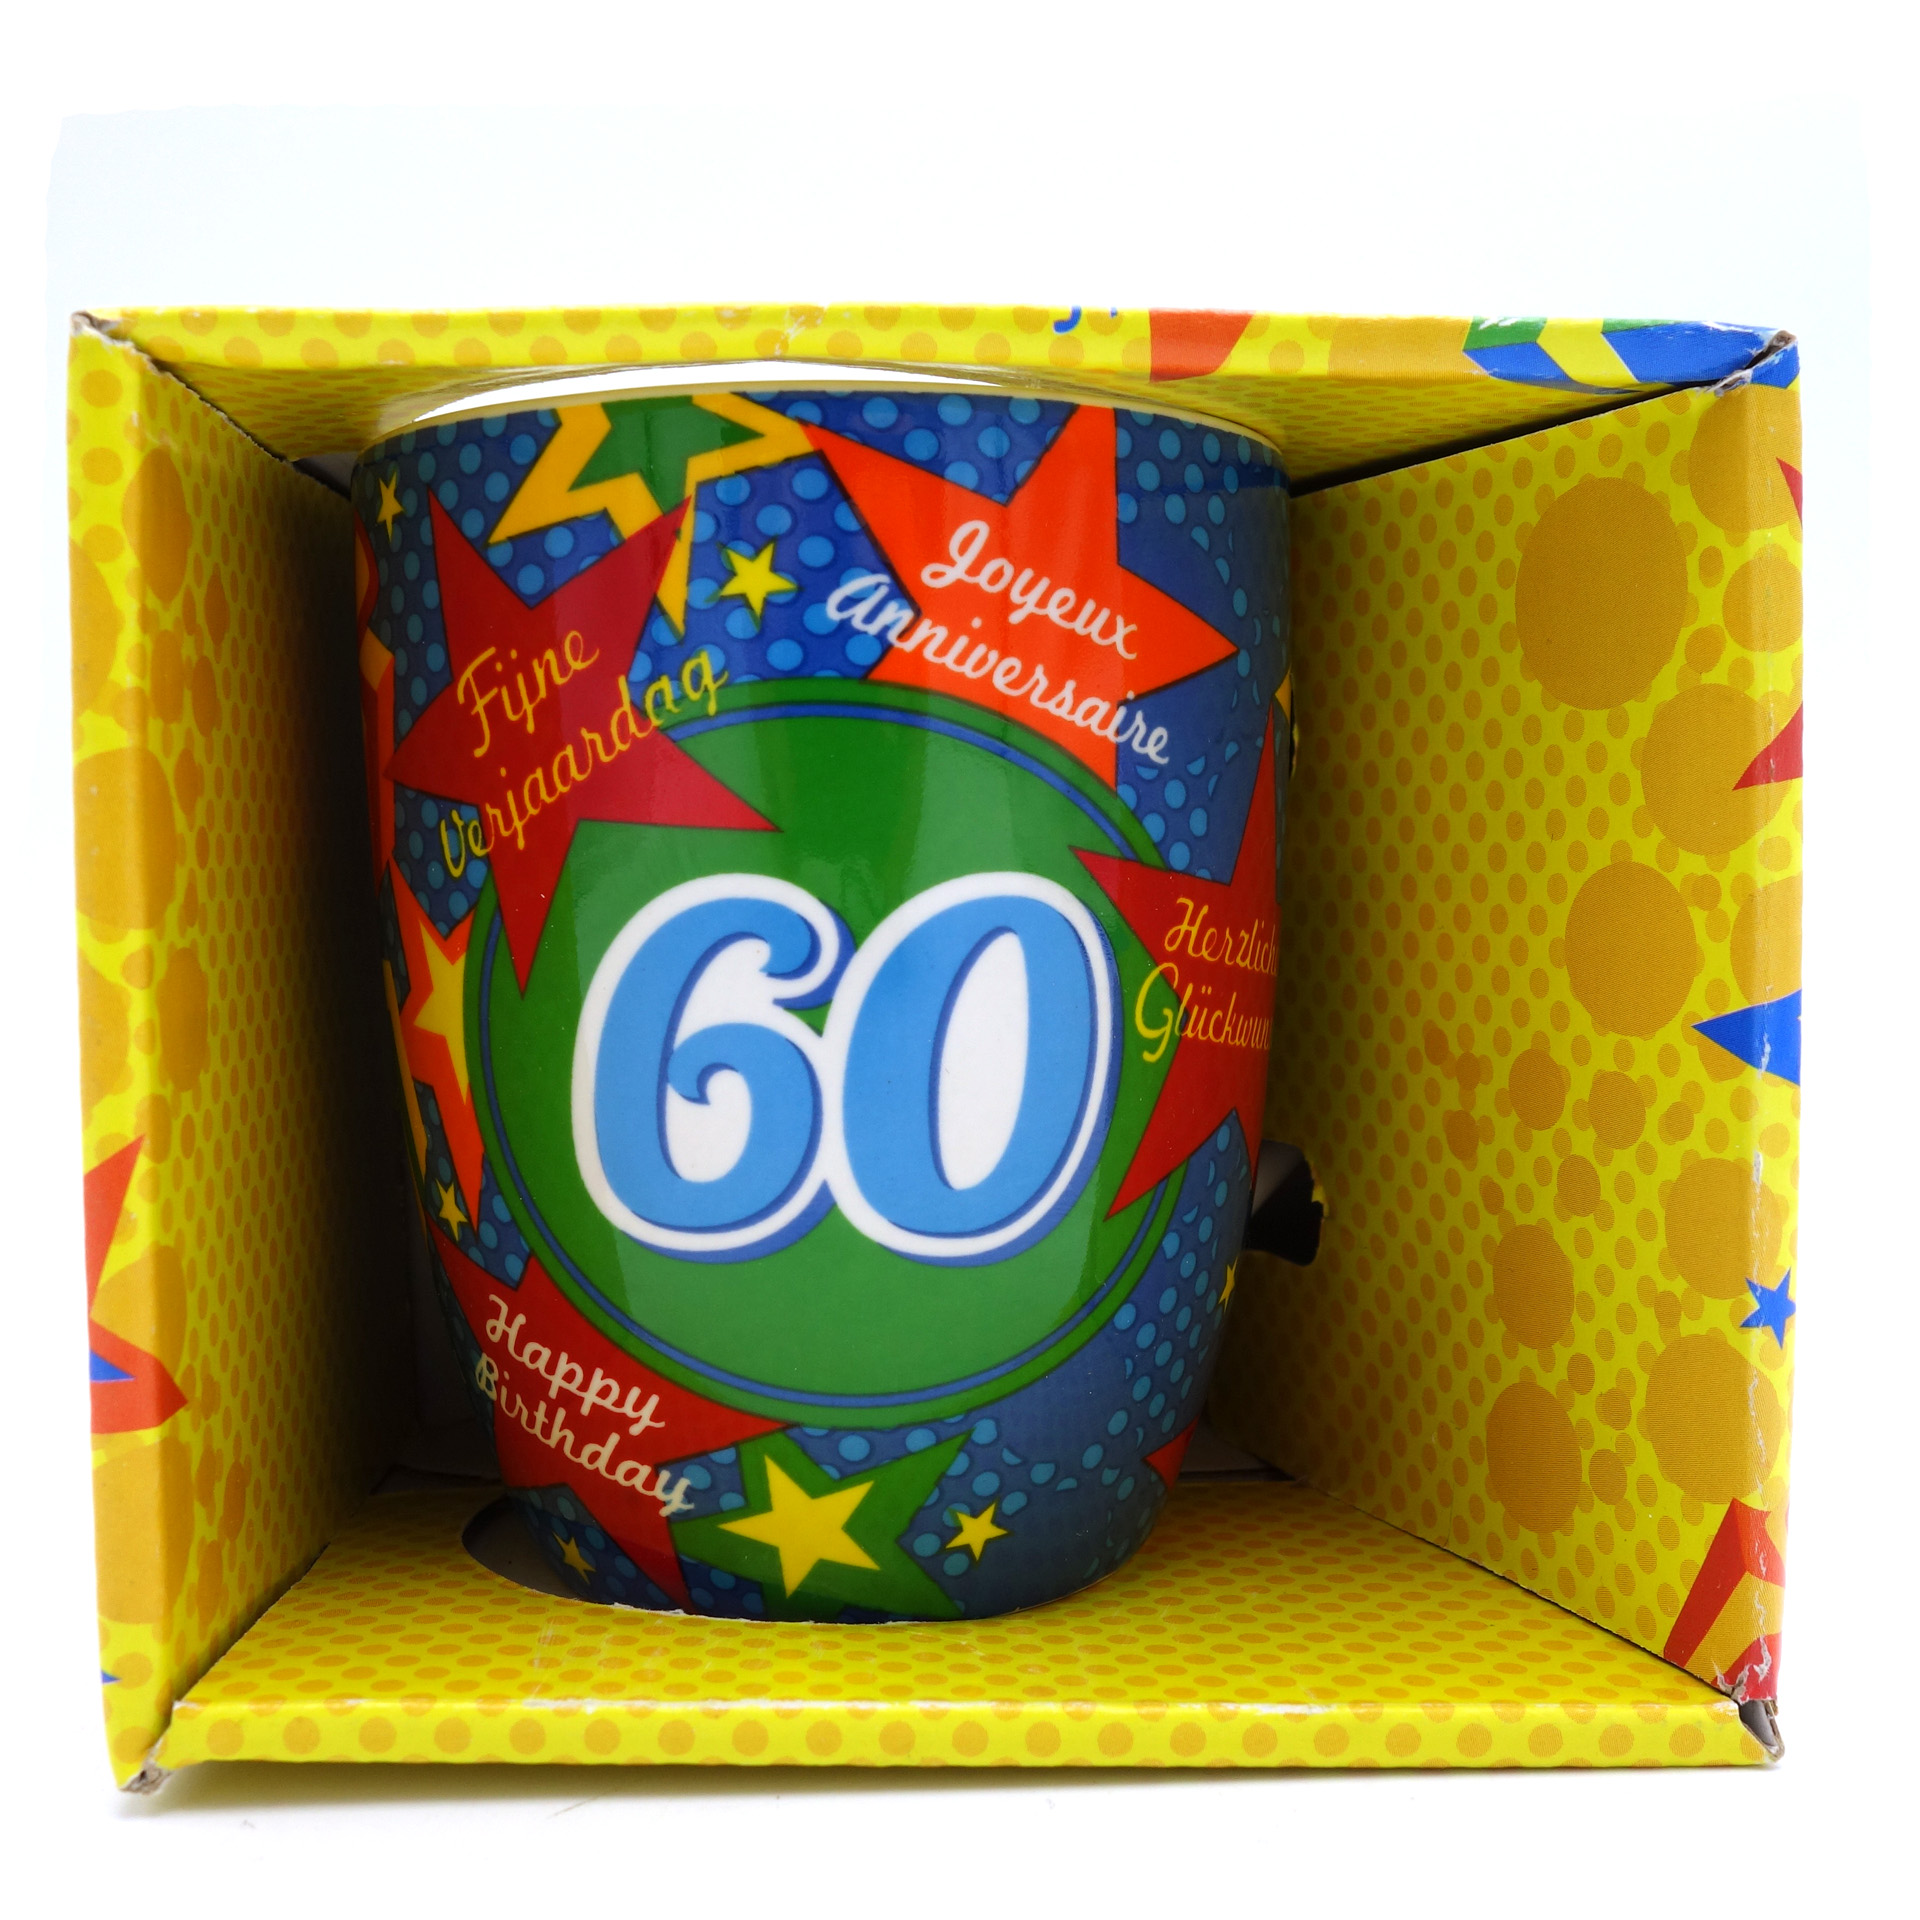 Geburtstagsgeschenk Tasse "60 Happy Birthday" Becher 